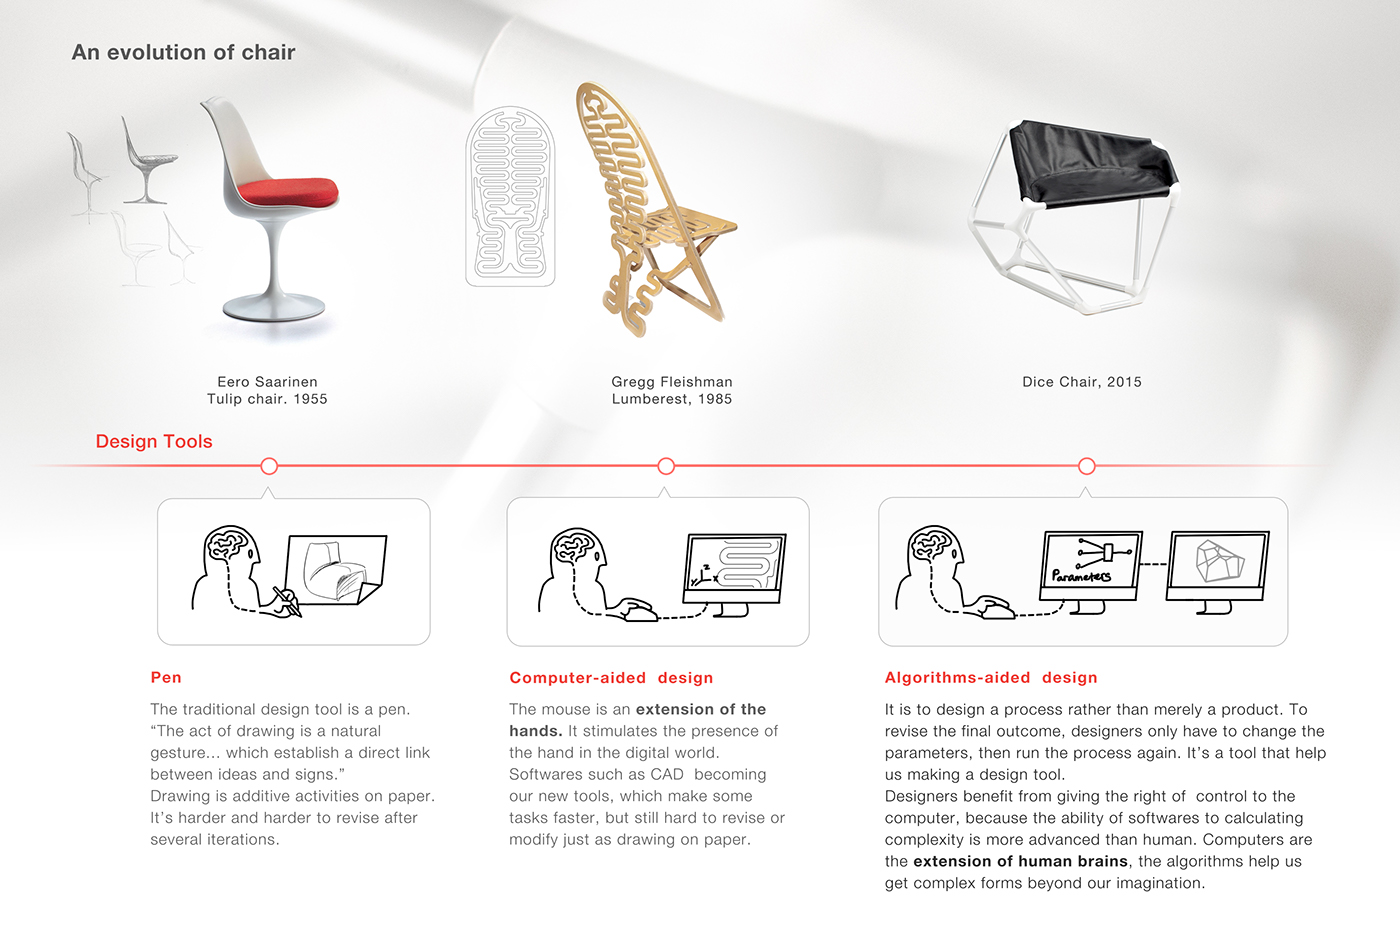 parametric design algorithmic Algorithms voronoi chair furniture 3D-Print co-design DIY Joint aluminum tube leather seat dice